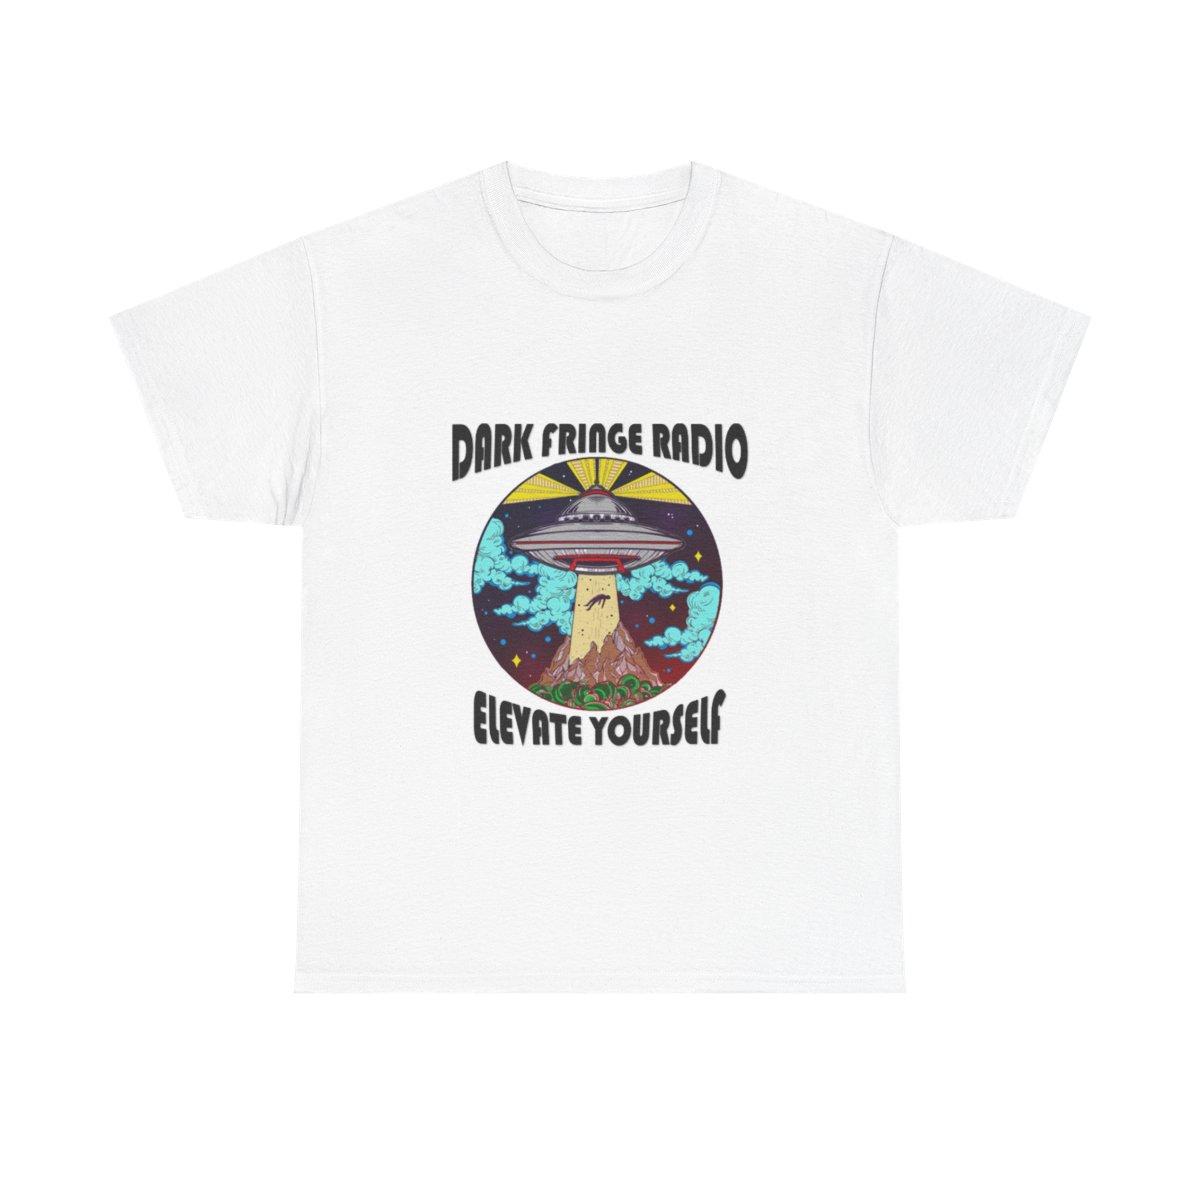 Dark Fringe Radio "Elevate Yourself" T-Shirt product thumbnail image